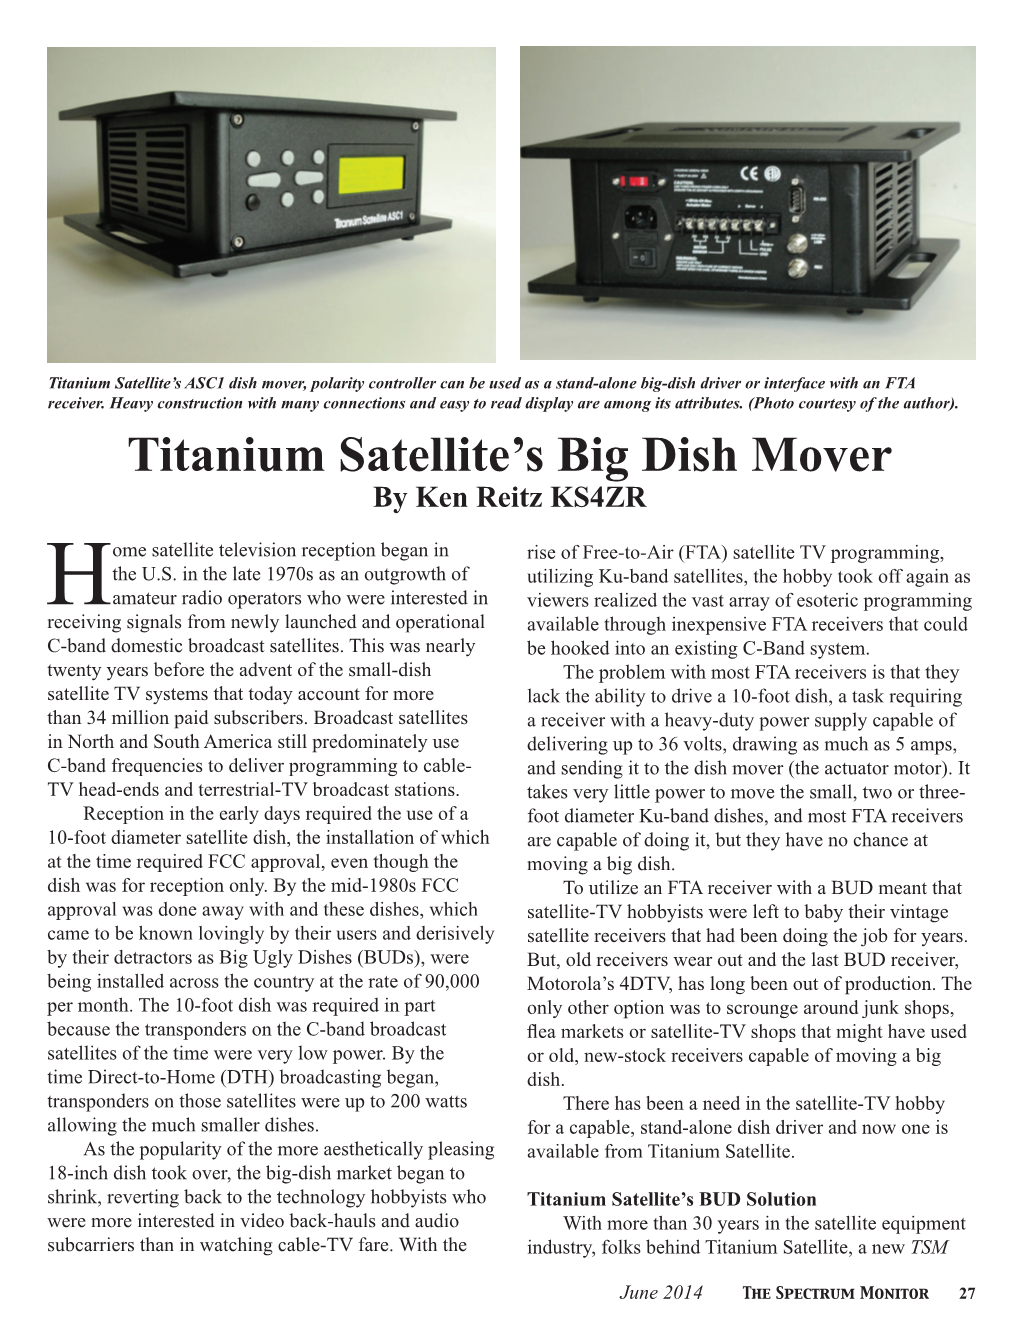 Titanium Satellite's Big Dish Mover